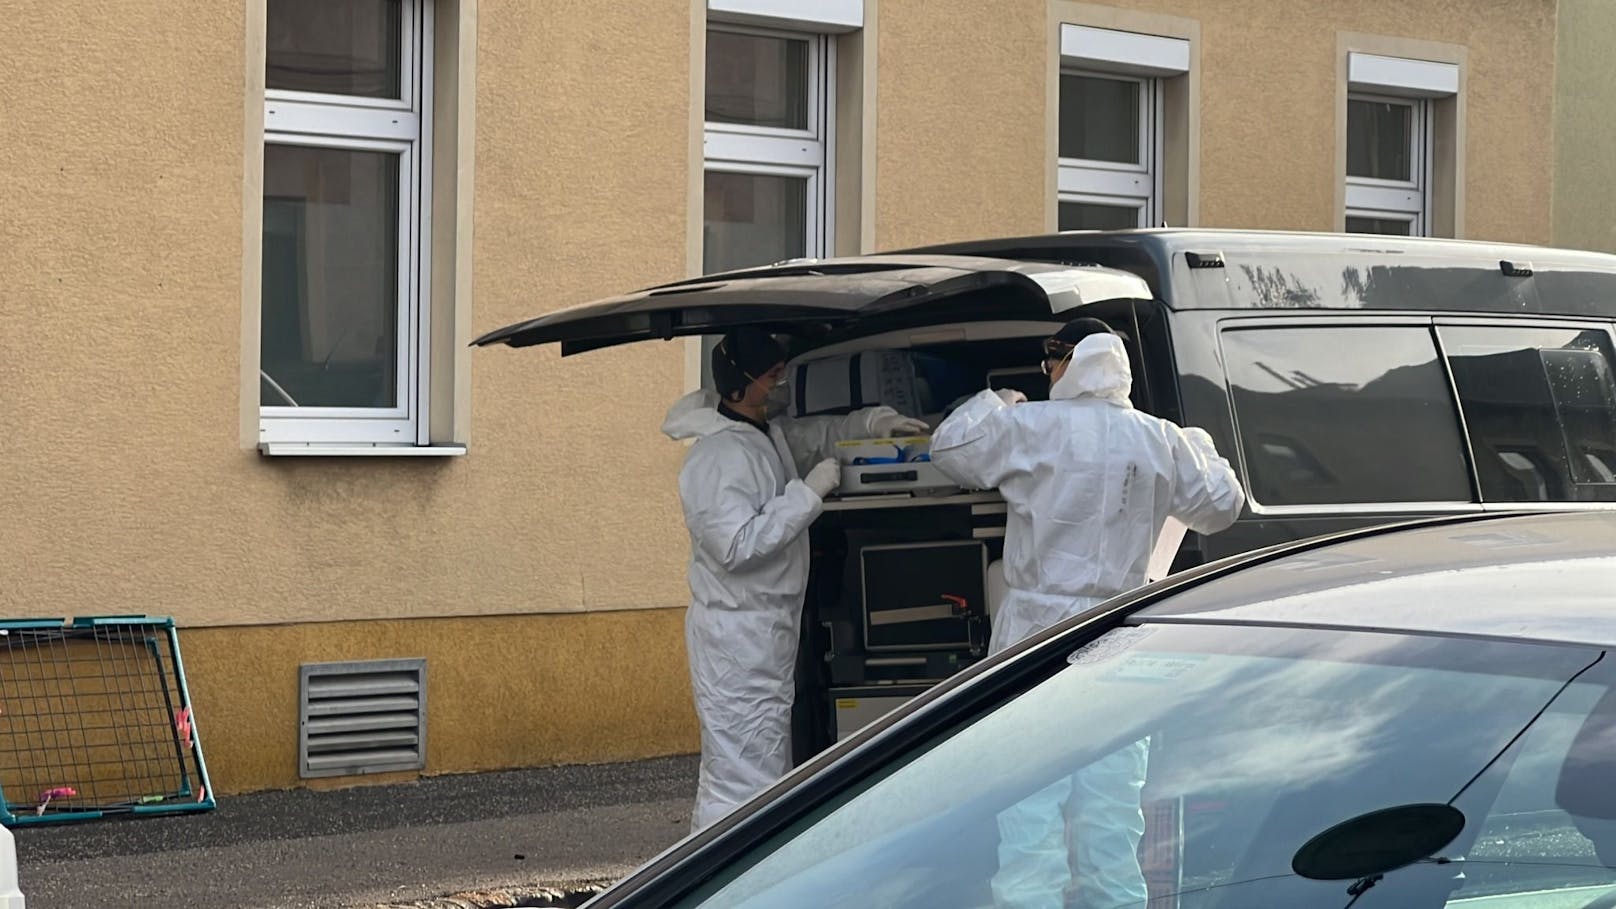 Bei einem Zimmerbrand in einem Wohnhaus in Wien ist in der Nacht auf Freitag eine Person ums Leben gekommen, eine weitere wurde schwer verletzt.